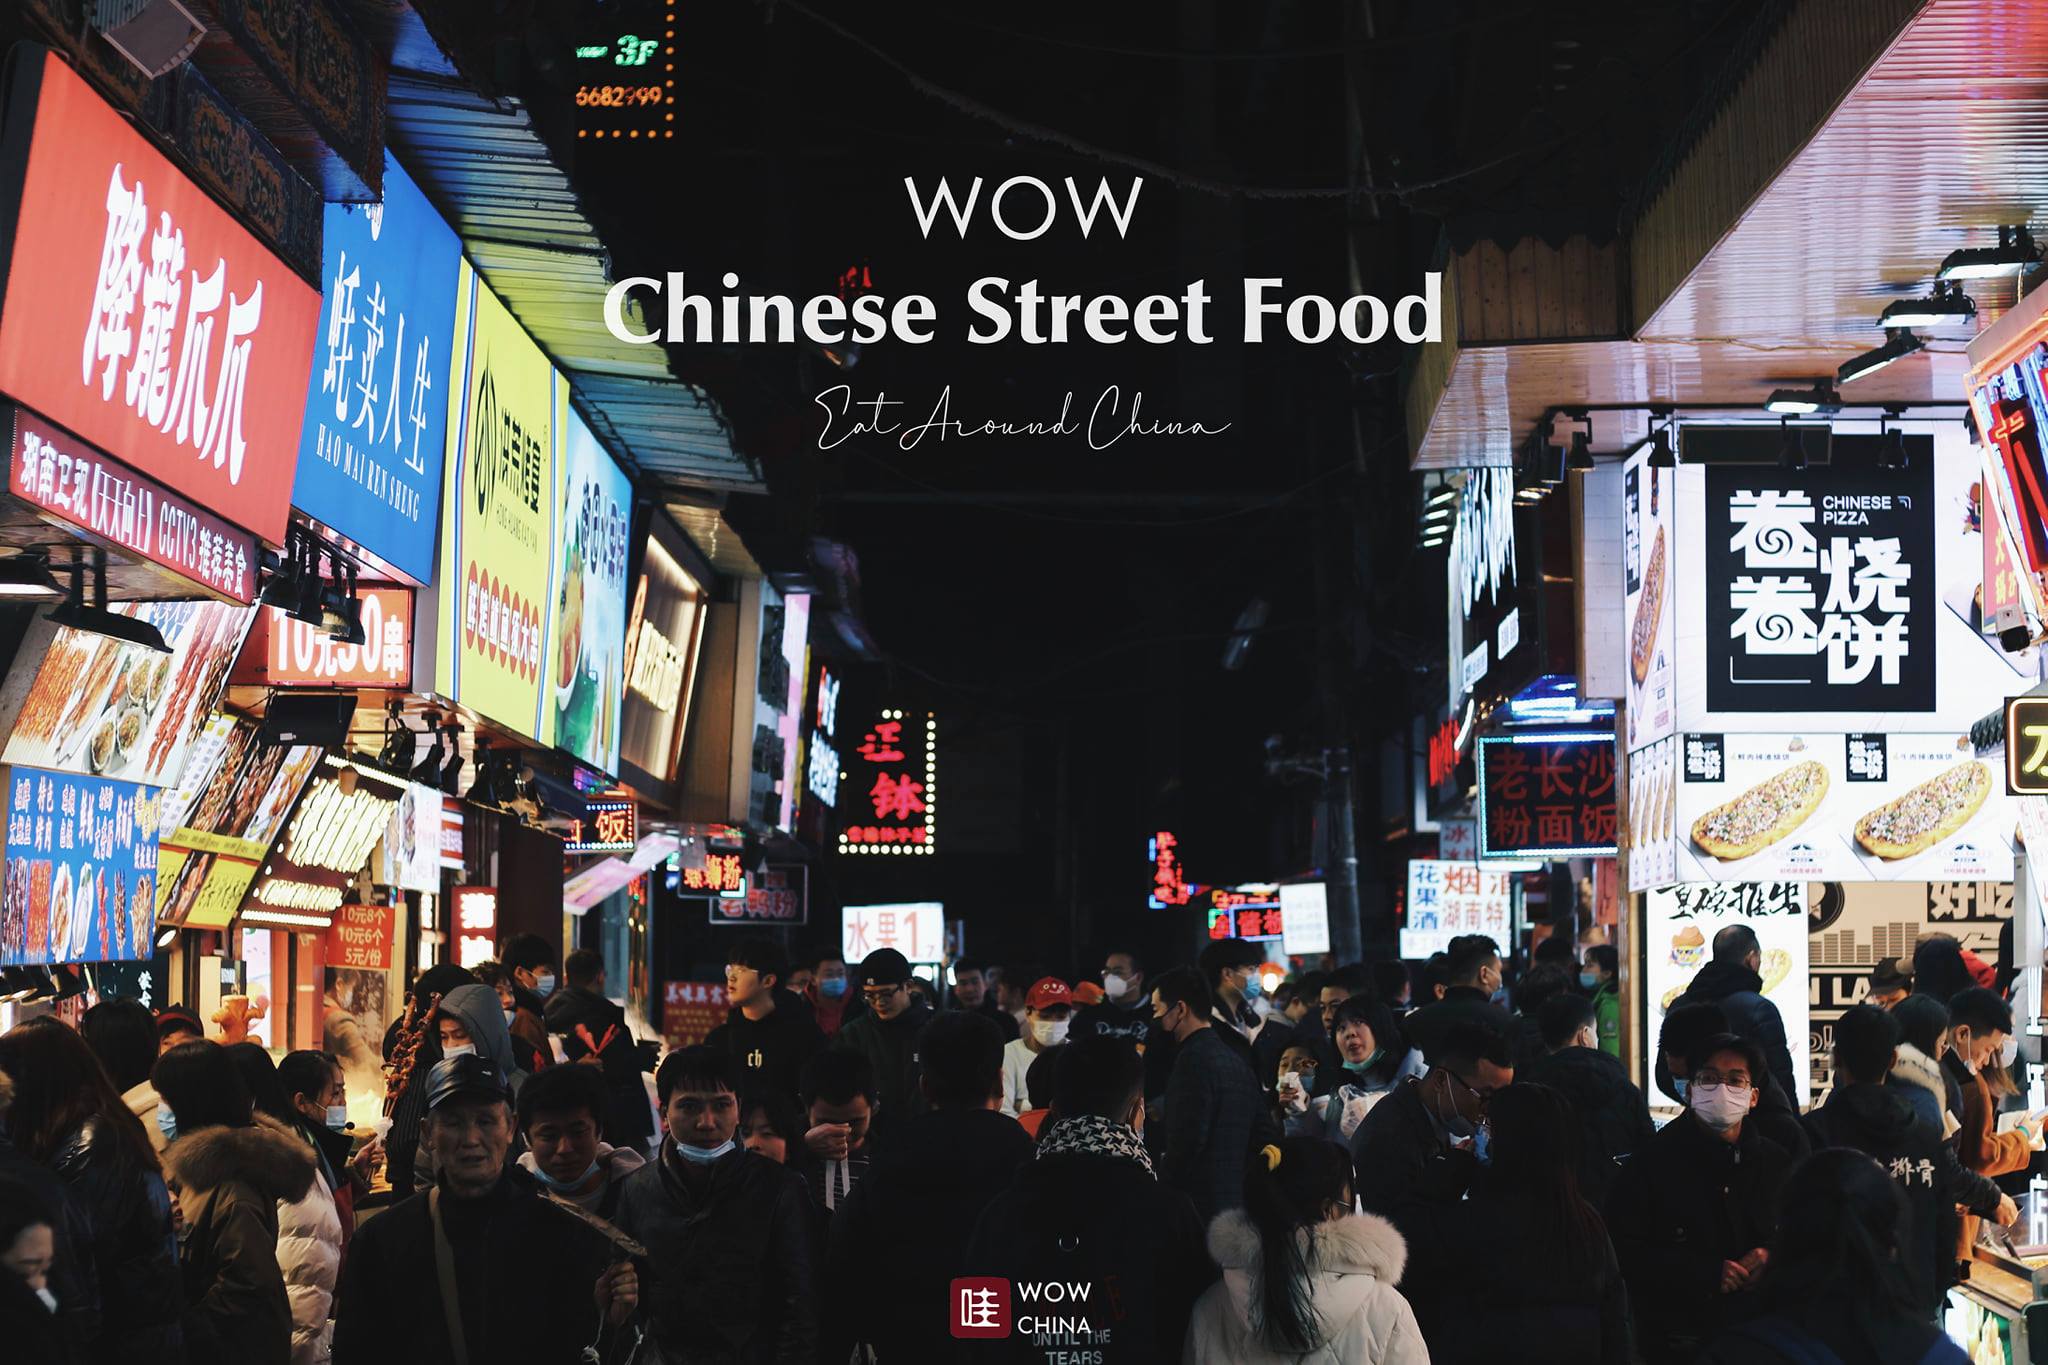 สัมผัสมนต์เสน่ห์สตรีทฟู้ดในเมืองจีน
จัดเต็มกับอาหารทานเล่น 30 ชนิดแบบ #WOW #WOW
…